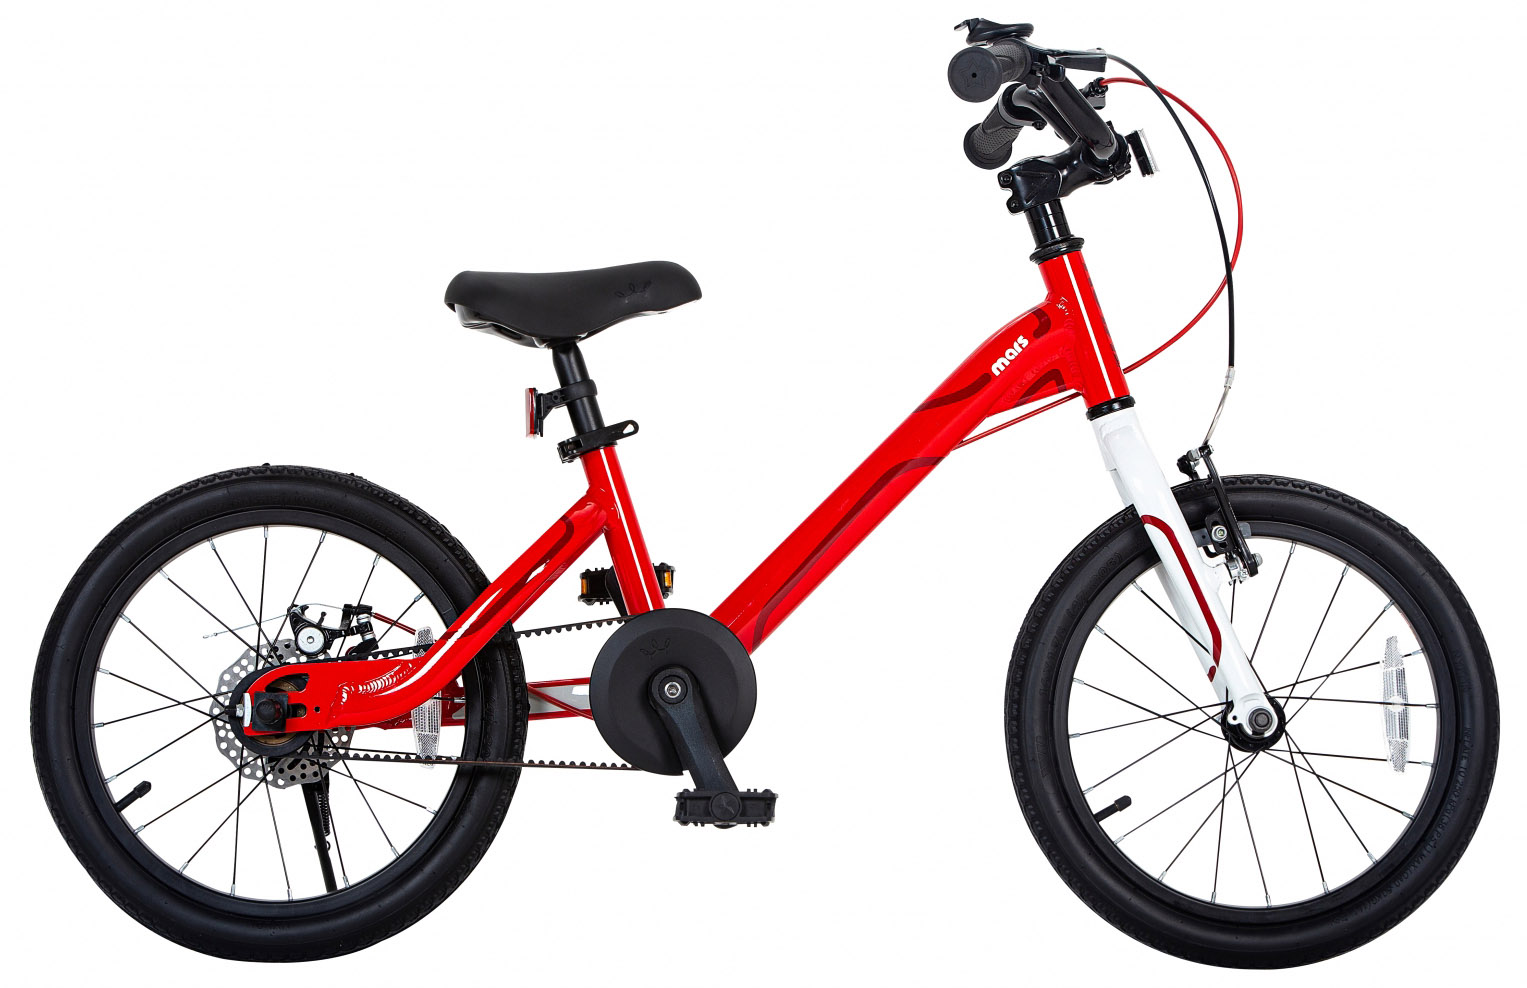  Отзывы о Детском велосипеде Royal Baby Mars 18 2021